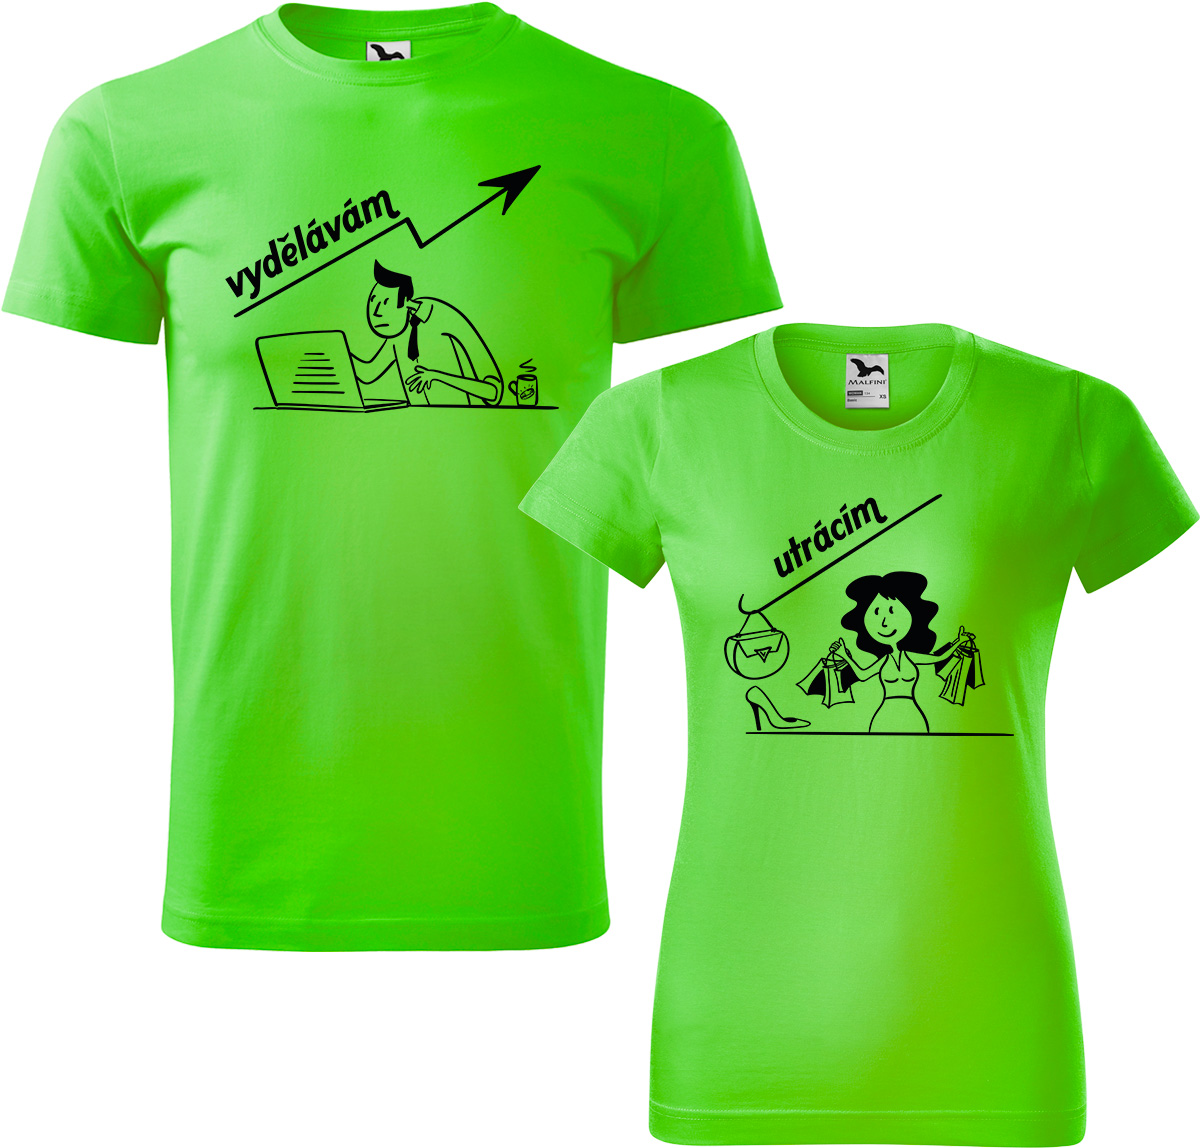 Trička pro páry - Vydělává, utrácí Barva: Apple Green (92), Velikost dámské tričko: 3XL, Velikost pánské tričko: 4XL